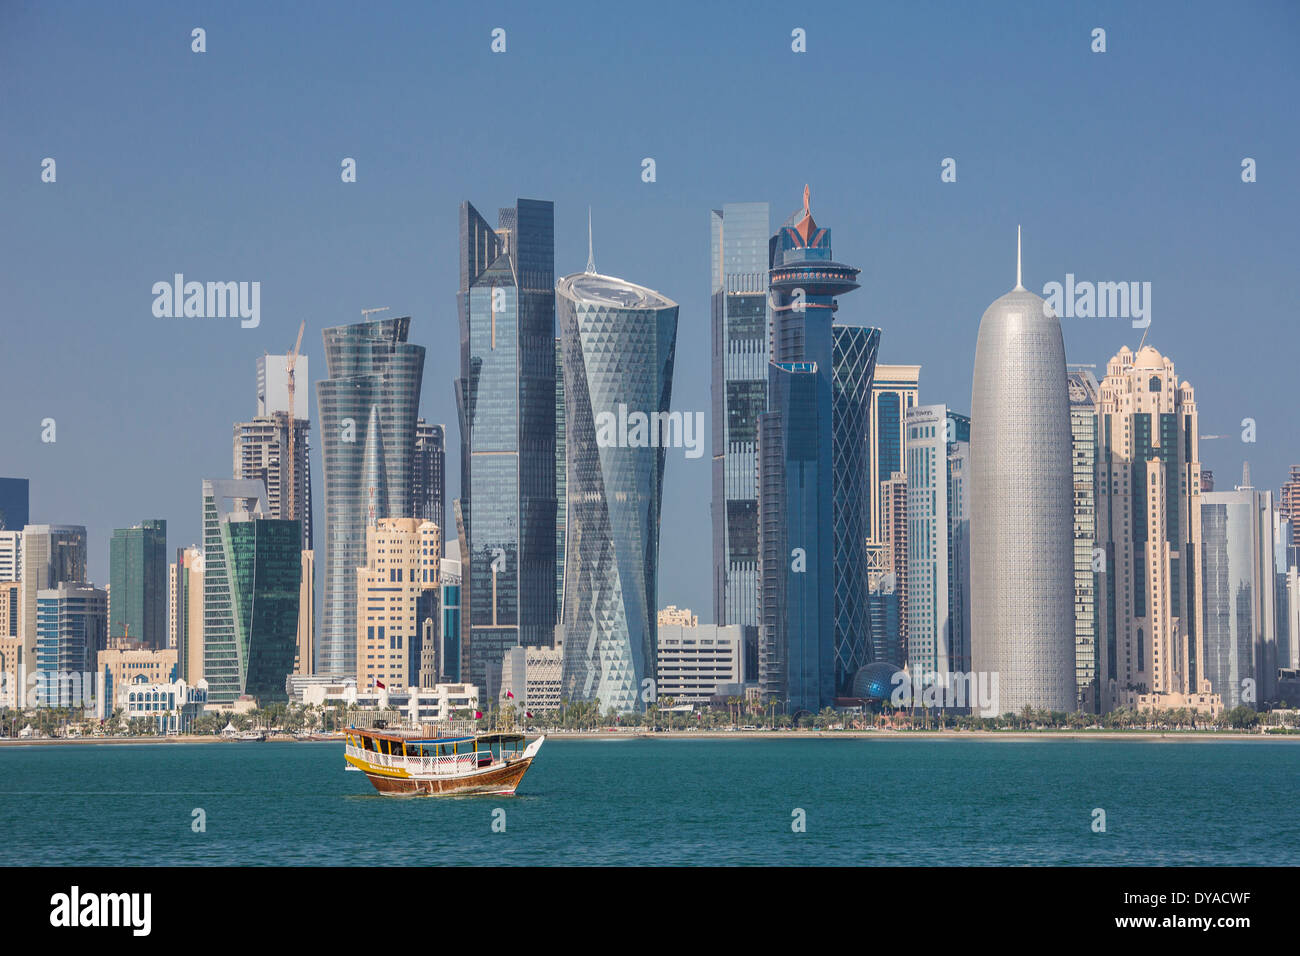 Al Bidda Burj Doha in Qatar Medio Oriente World Trade Center architettura barca bay city colorato corniche skyline futuristica sky Foto Stock